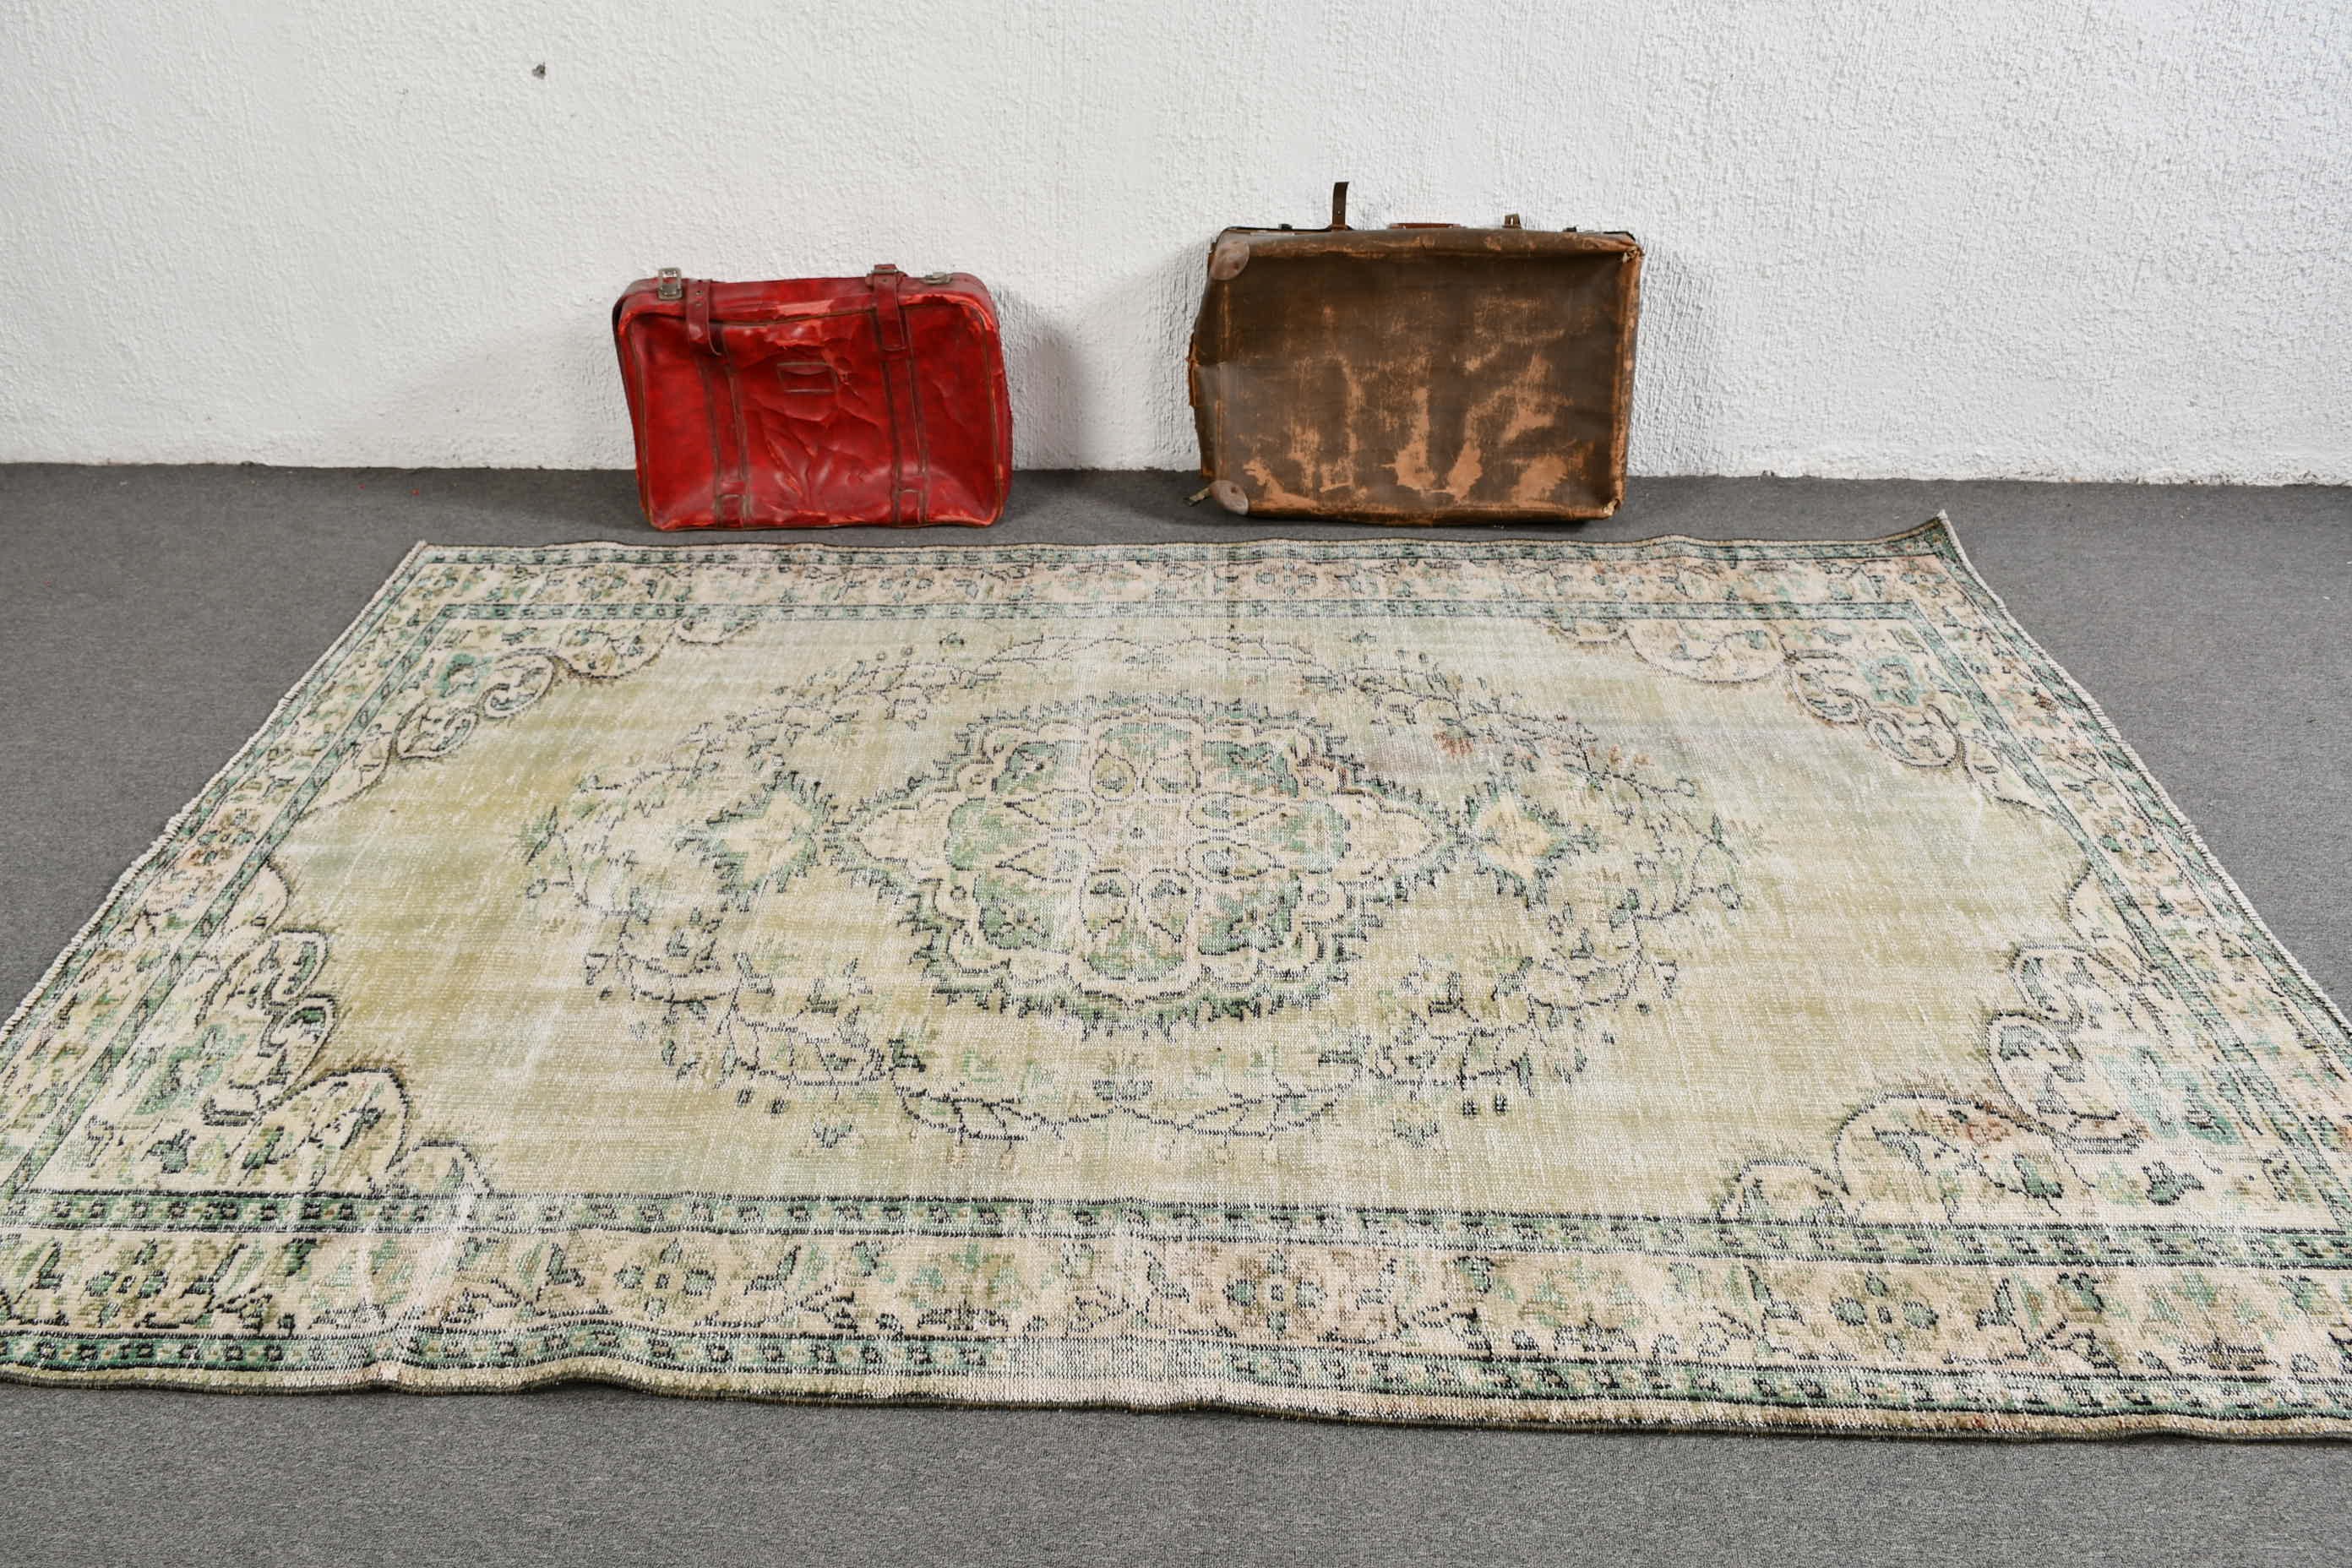 Vintage Rugs, Ethnic Rug, Turkish Rug, Wool Rug, Green  5.8x8.7 ft Large Rugs, Bedroom Rug, Rugs for Bedroom, Living Room Rug